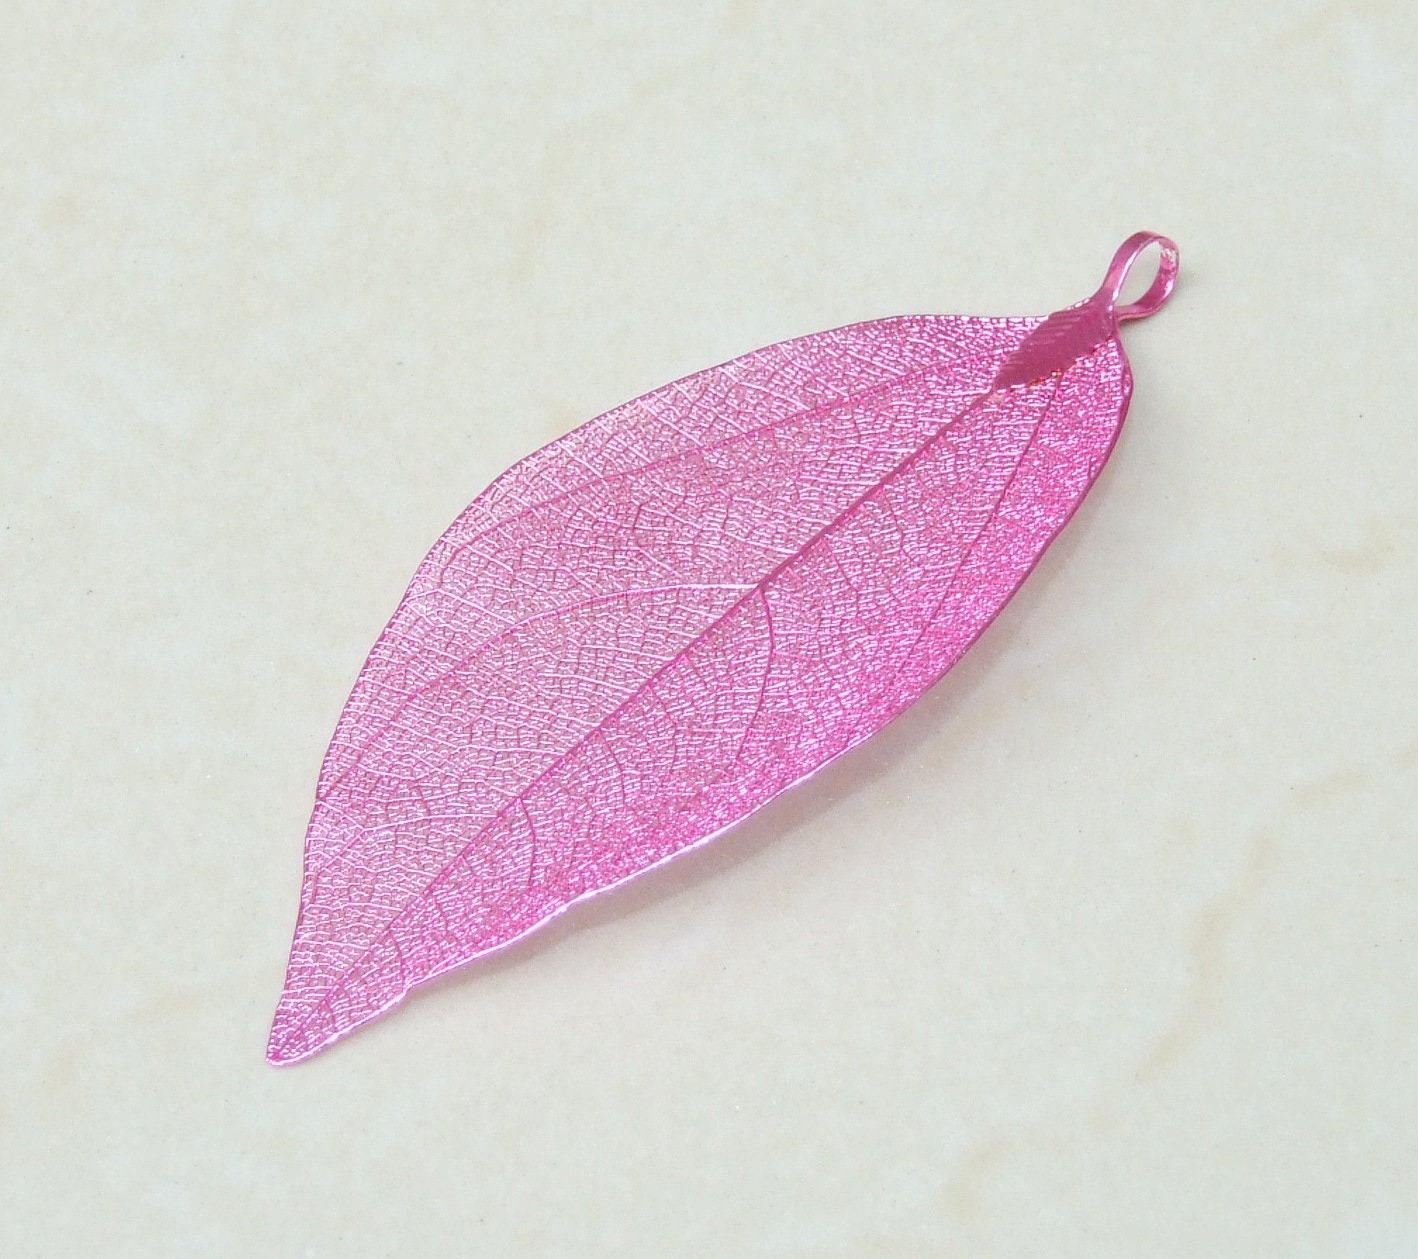 Liquid Metal Leaf Pendant - Large Leaf Pendant - Autumn Leaf - Pink - BOHO - Tribal - 35mm x 78mm - 2253